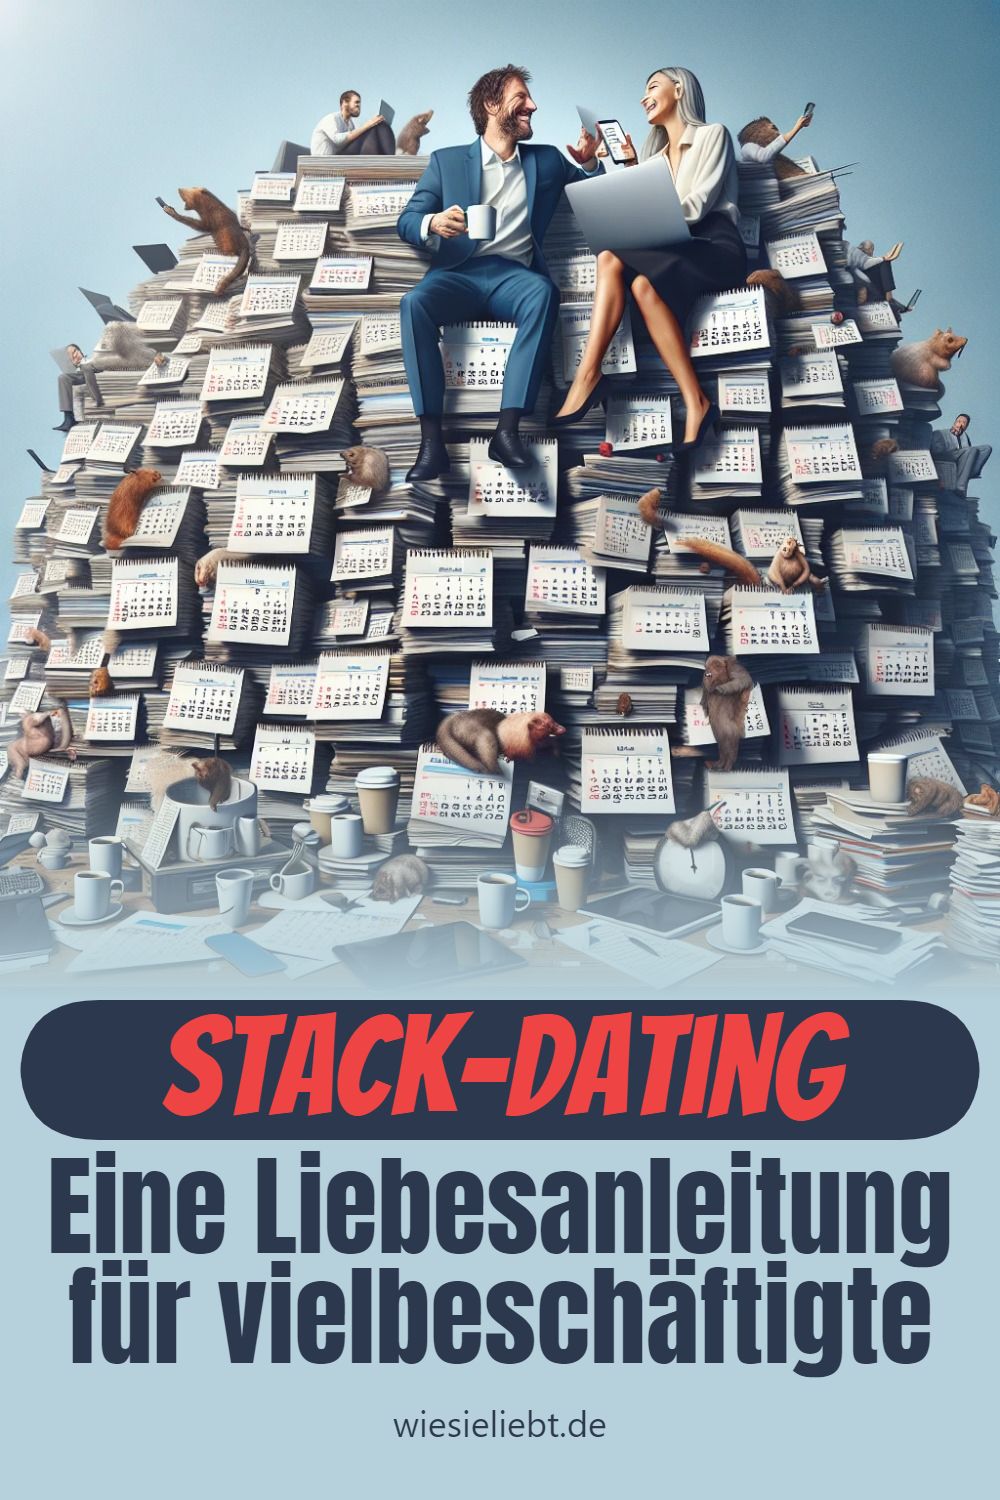 Stack-Dating Eine Liebesanleitung für vielbeschäftigte